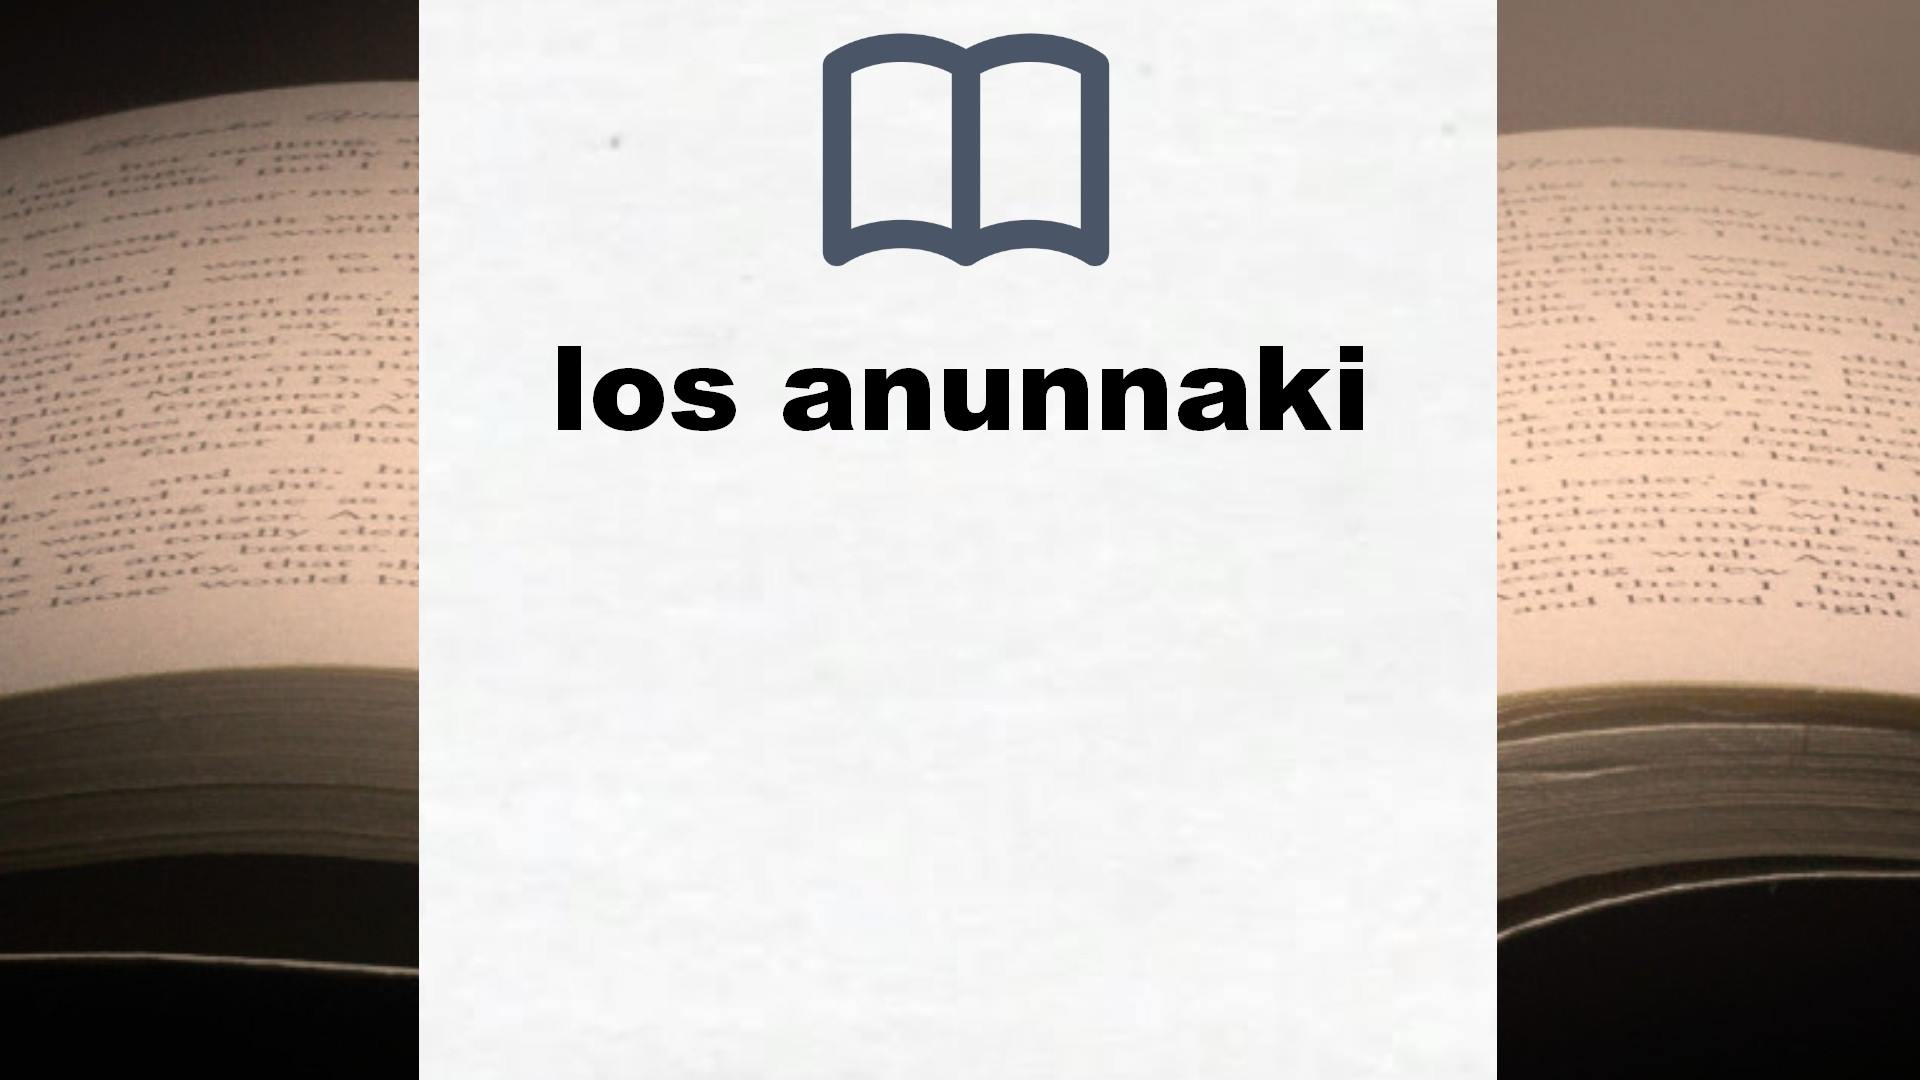 Libros sobre los anunnaki